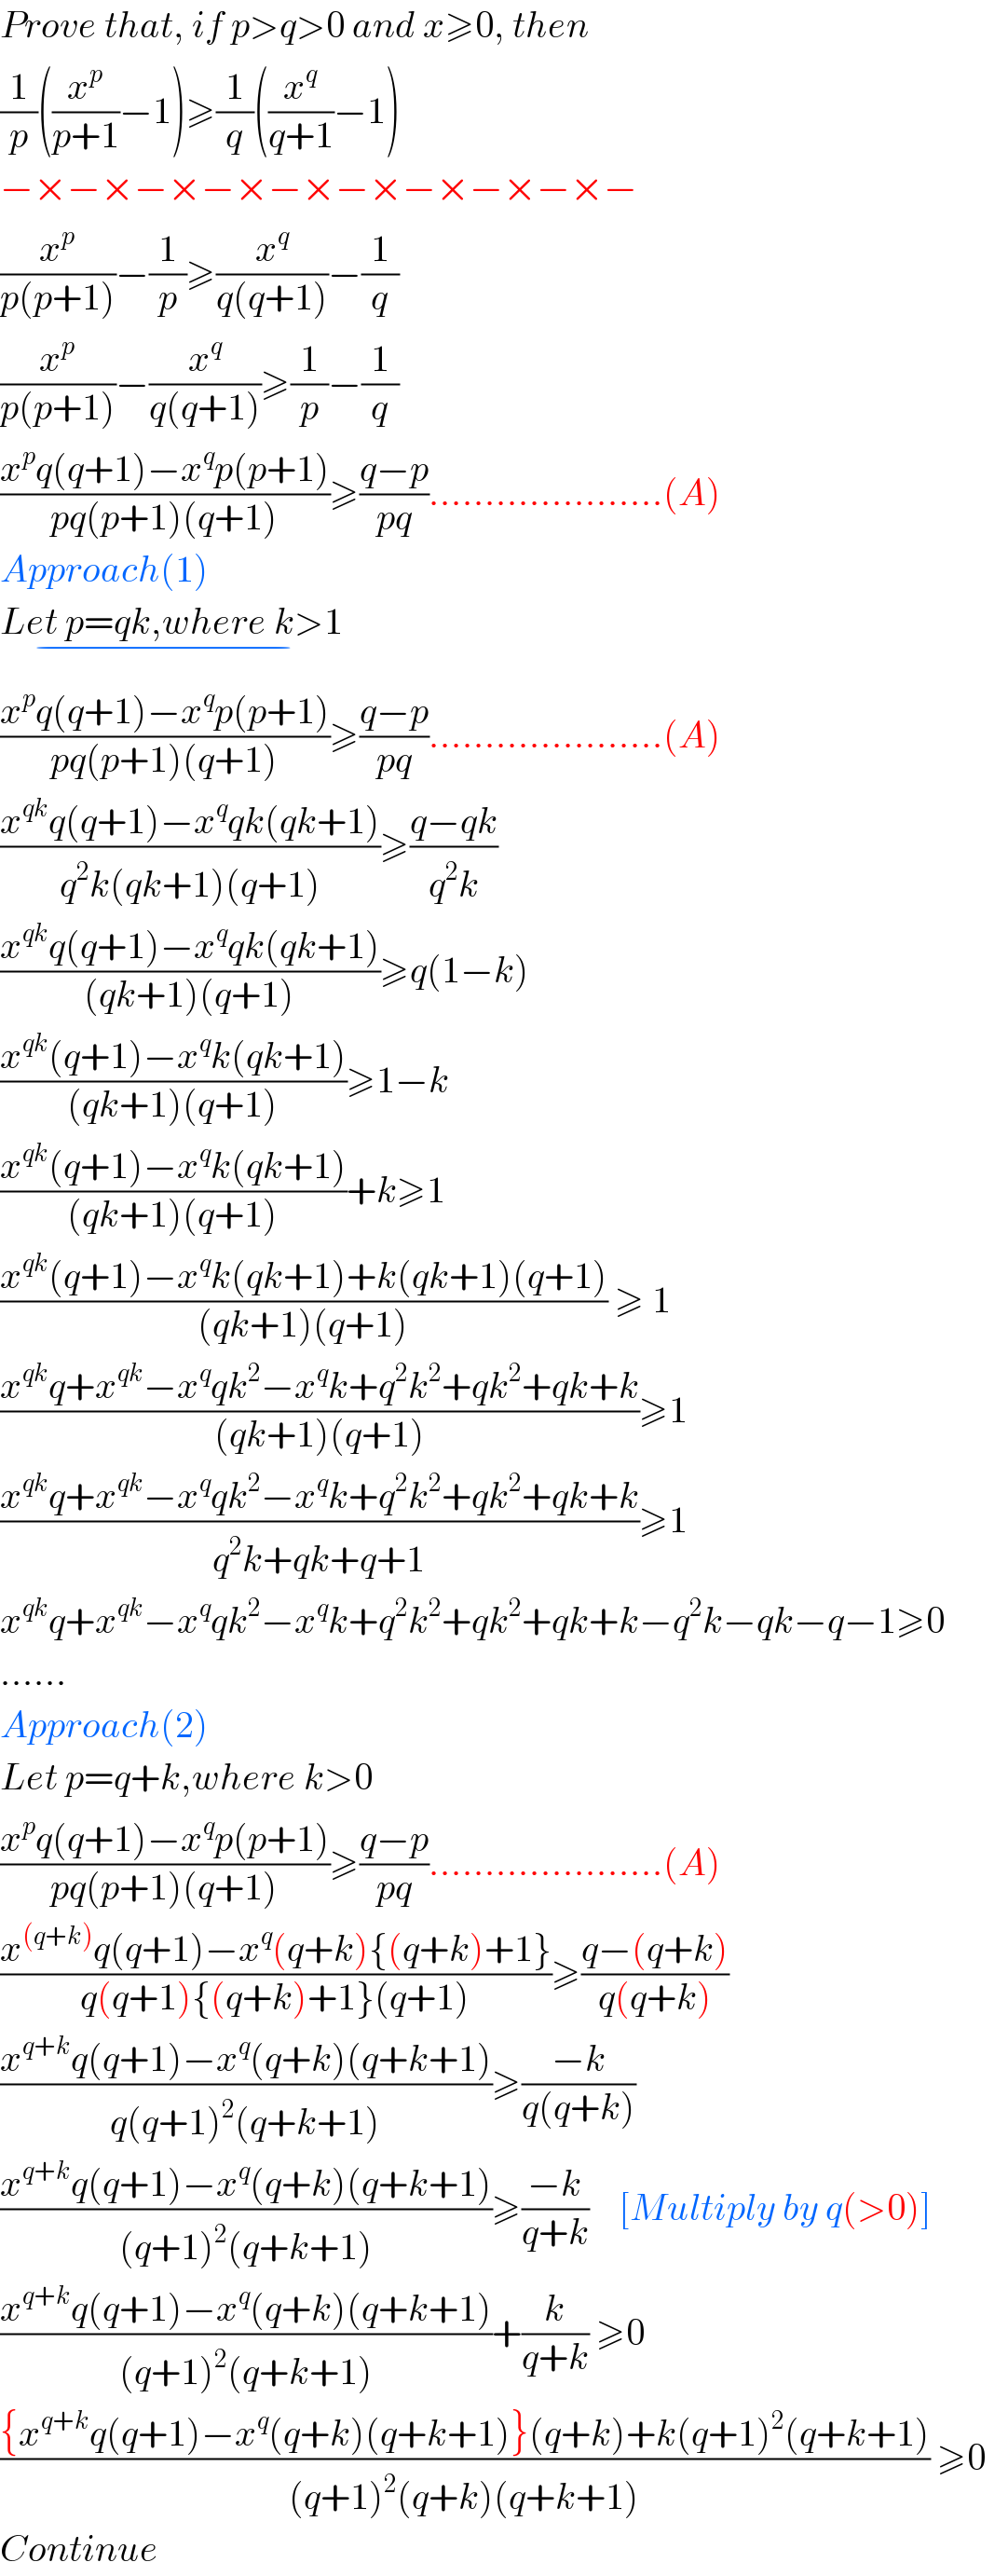 Prove that, if p>q>0 and x≥0, then  (1/p)((x^p /(p+1))−1)≥(1/q)((x^q /(q+1))−1)  −×−×−×−×−×−×−×−×−×−  (x^p /(p(p+1)))−(1/p)≥(x^q /(q(q+1)))−(1/q)  (x^p /(p(p+1)))−(x^q /(q(q+1)))≥(1/p)−(1/q)  ((x^p q(q+1)−x^q p(p+1))/(pq(p+1)(q+1)))≥((q−p)/(pq)).....................(A)  Approach(1)  Let p=qk,where k>1_(−)   ((x^p q(q+1)−x^q p(p+1))/(pq(p+1)(q+1)))≥((q−p)/(pq)).....................(A)  ((x^(qk) q(q+1)−x^q qk(qk+1))/(q^2 k(qk+1)(q+1)))≥((q−qk)/(q^2 k))  ((x^(qk) q(q+1)−x^q qk(qk+1))/((qk+1)(q+1)))≥q(1−k)  ((x^(qk) (q+1)−x^q k(qk+1))/((qk+1)(q+1)))≥1−k  ((x^(qk) (q+1)−x^q k(qk+1))/((qk+1)(q+1)))+k≥1  ((x^(qk) (q+1)−x^q k(qk+1)+k(qk+1)(q+1))/((qk+1)(q+1))) ≥ 1  ((x^(qk) q+x^(qk) −x^q qk^2 −x^q k+q^2 k^2 +qk^2 +qk+k)/((qk+1)(q+1)))≥1  ((x^(qk) q+x^(qk) −x^q qk^2 −x^q k+q^2 k^2 +qk^2 +qk+k)/(q^2 k+qk+q+1))≥1  x^(qk) q+x^(qk) −x^q qk^2 −x^q k+q^2 k^2 +qk^2 +qk+k−q^2 k−qk−q−1≥0  ......  Approach(2)  Let p=q+k,where k>0  ((x^p q(q+1)−x^q p(p+1))/(pq(p+1)(q+1)))≥((q−p)/(pq)).....................(A)  ((x^((q+k)) q(q+1)−x^q (q+k){(q+k)+1})/(q(q+1){(q+k)+1}(q+1)))≥((q−(q+k))/(q(q+k)))  ((x^(q+k) q(q+1)−x^q (q+k)(q+k+1))/(q(q+1)^2 (q+k+1)))≥((−k)/(q(q+k)))  ((x^(q+k) q(q+1)−x^q (q+k)(q+k+1))/((q+1)^2 (q+k+1)))≥((−k)/(q+k))    [Multiply by q(>0)]  ((x^(q+k) q(q+1)−x^q (q+k)(q+k+1))/((q+1)^2 (q+k+1)))+(k/(q+k)) ≥0     (({x^(q+k) q(q+1)−x^q (q+k)(q+k+1)}(q+k)+k(q+1)^2 (q+k+1))/((q+1)^2 (q+k)(q+k+1))) ≥0     Continue  